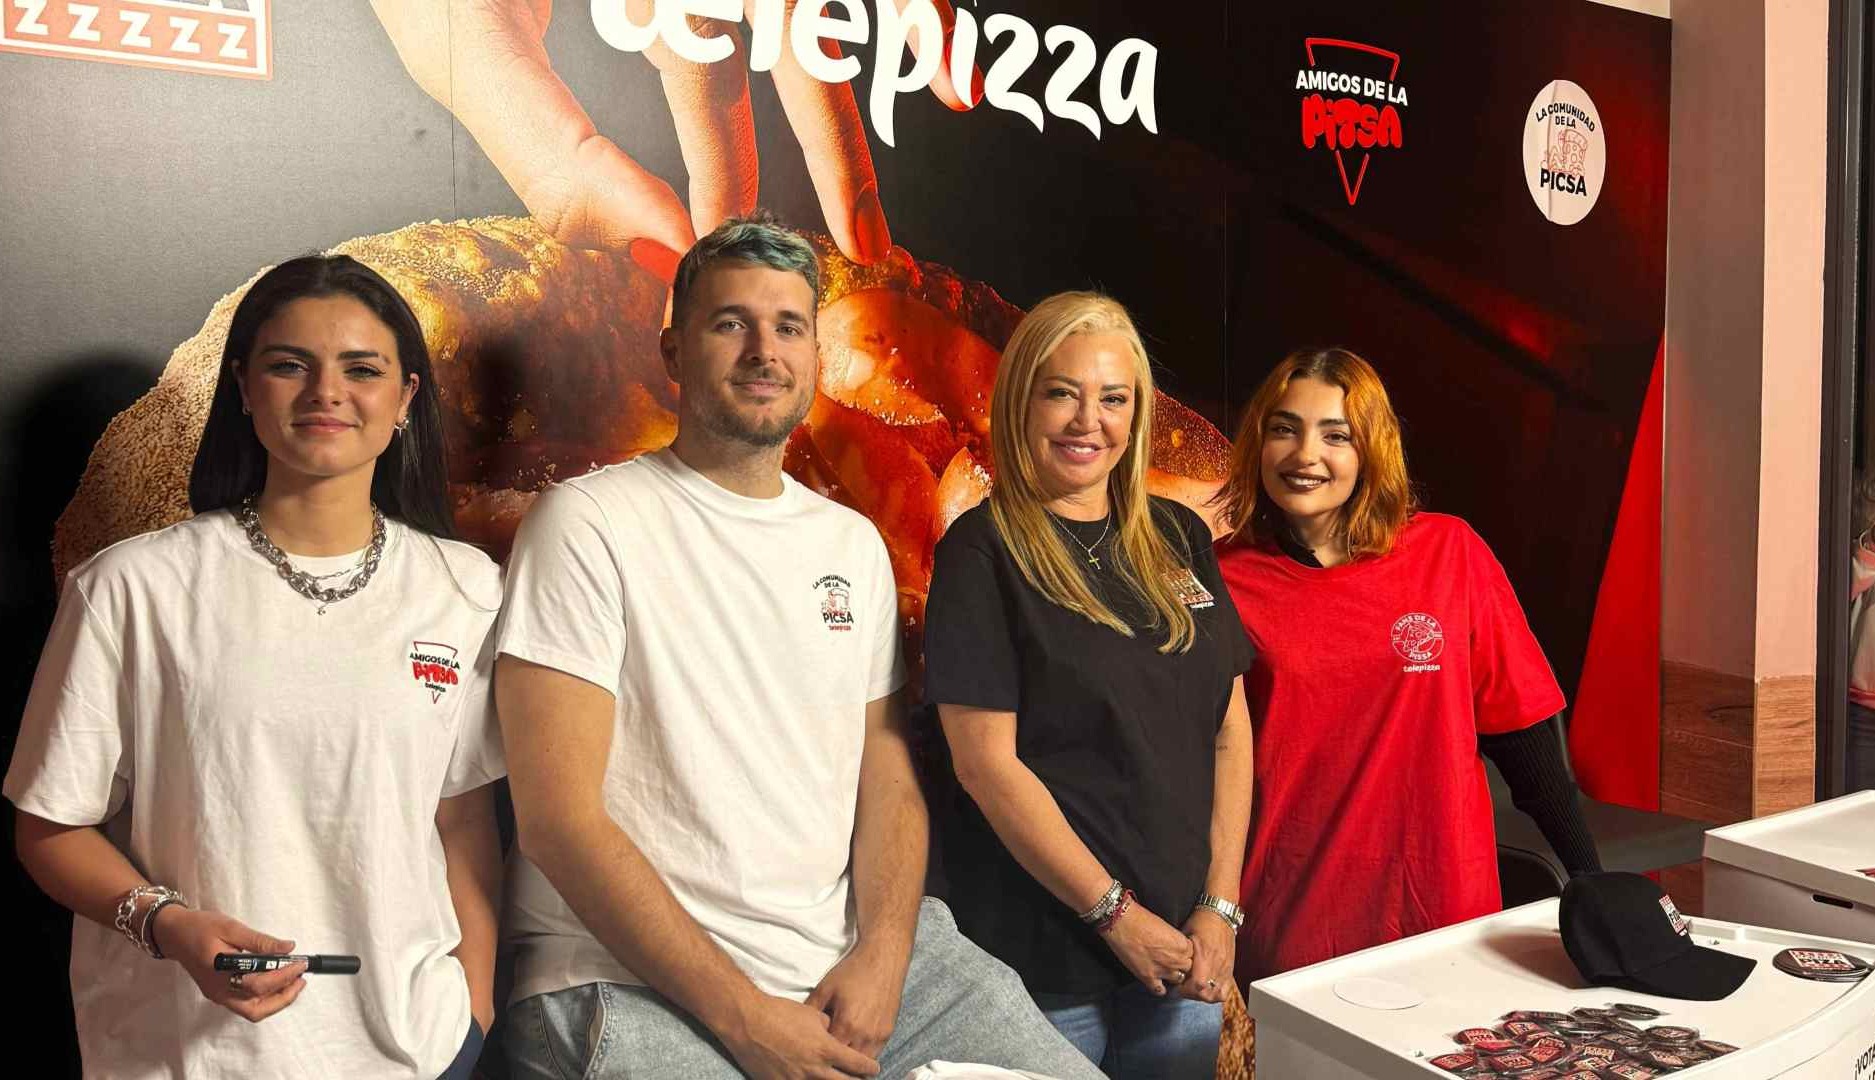 Los influencers Lucía de la Puerta, Perxitaa, Belén Esteban y Violeta para Telepizza